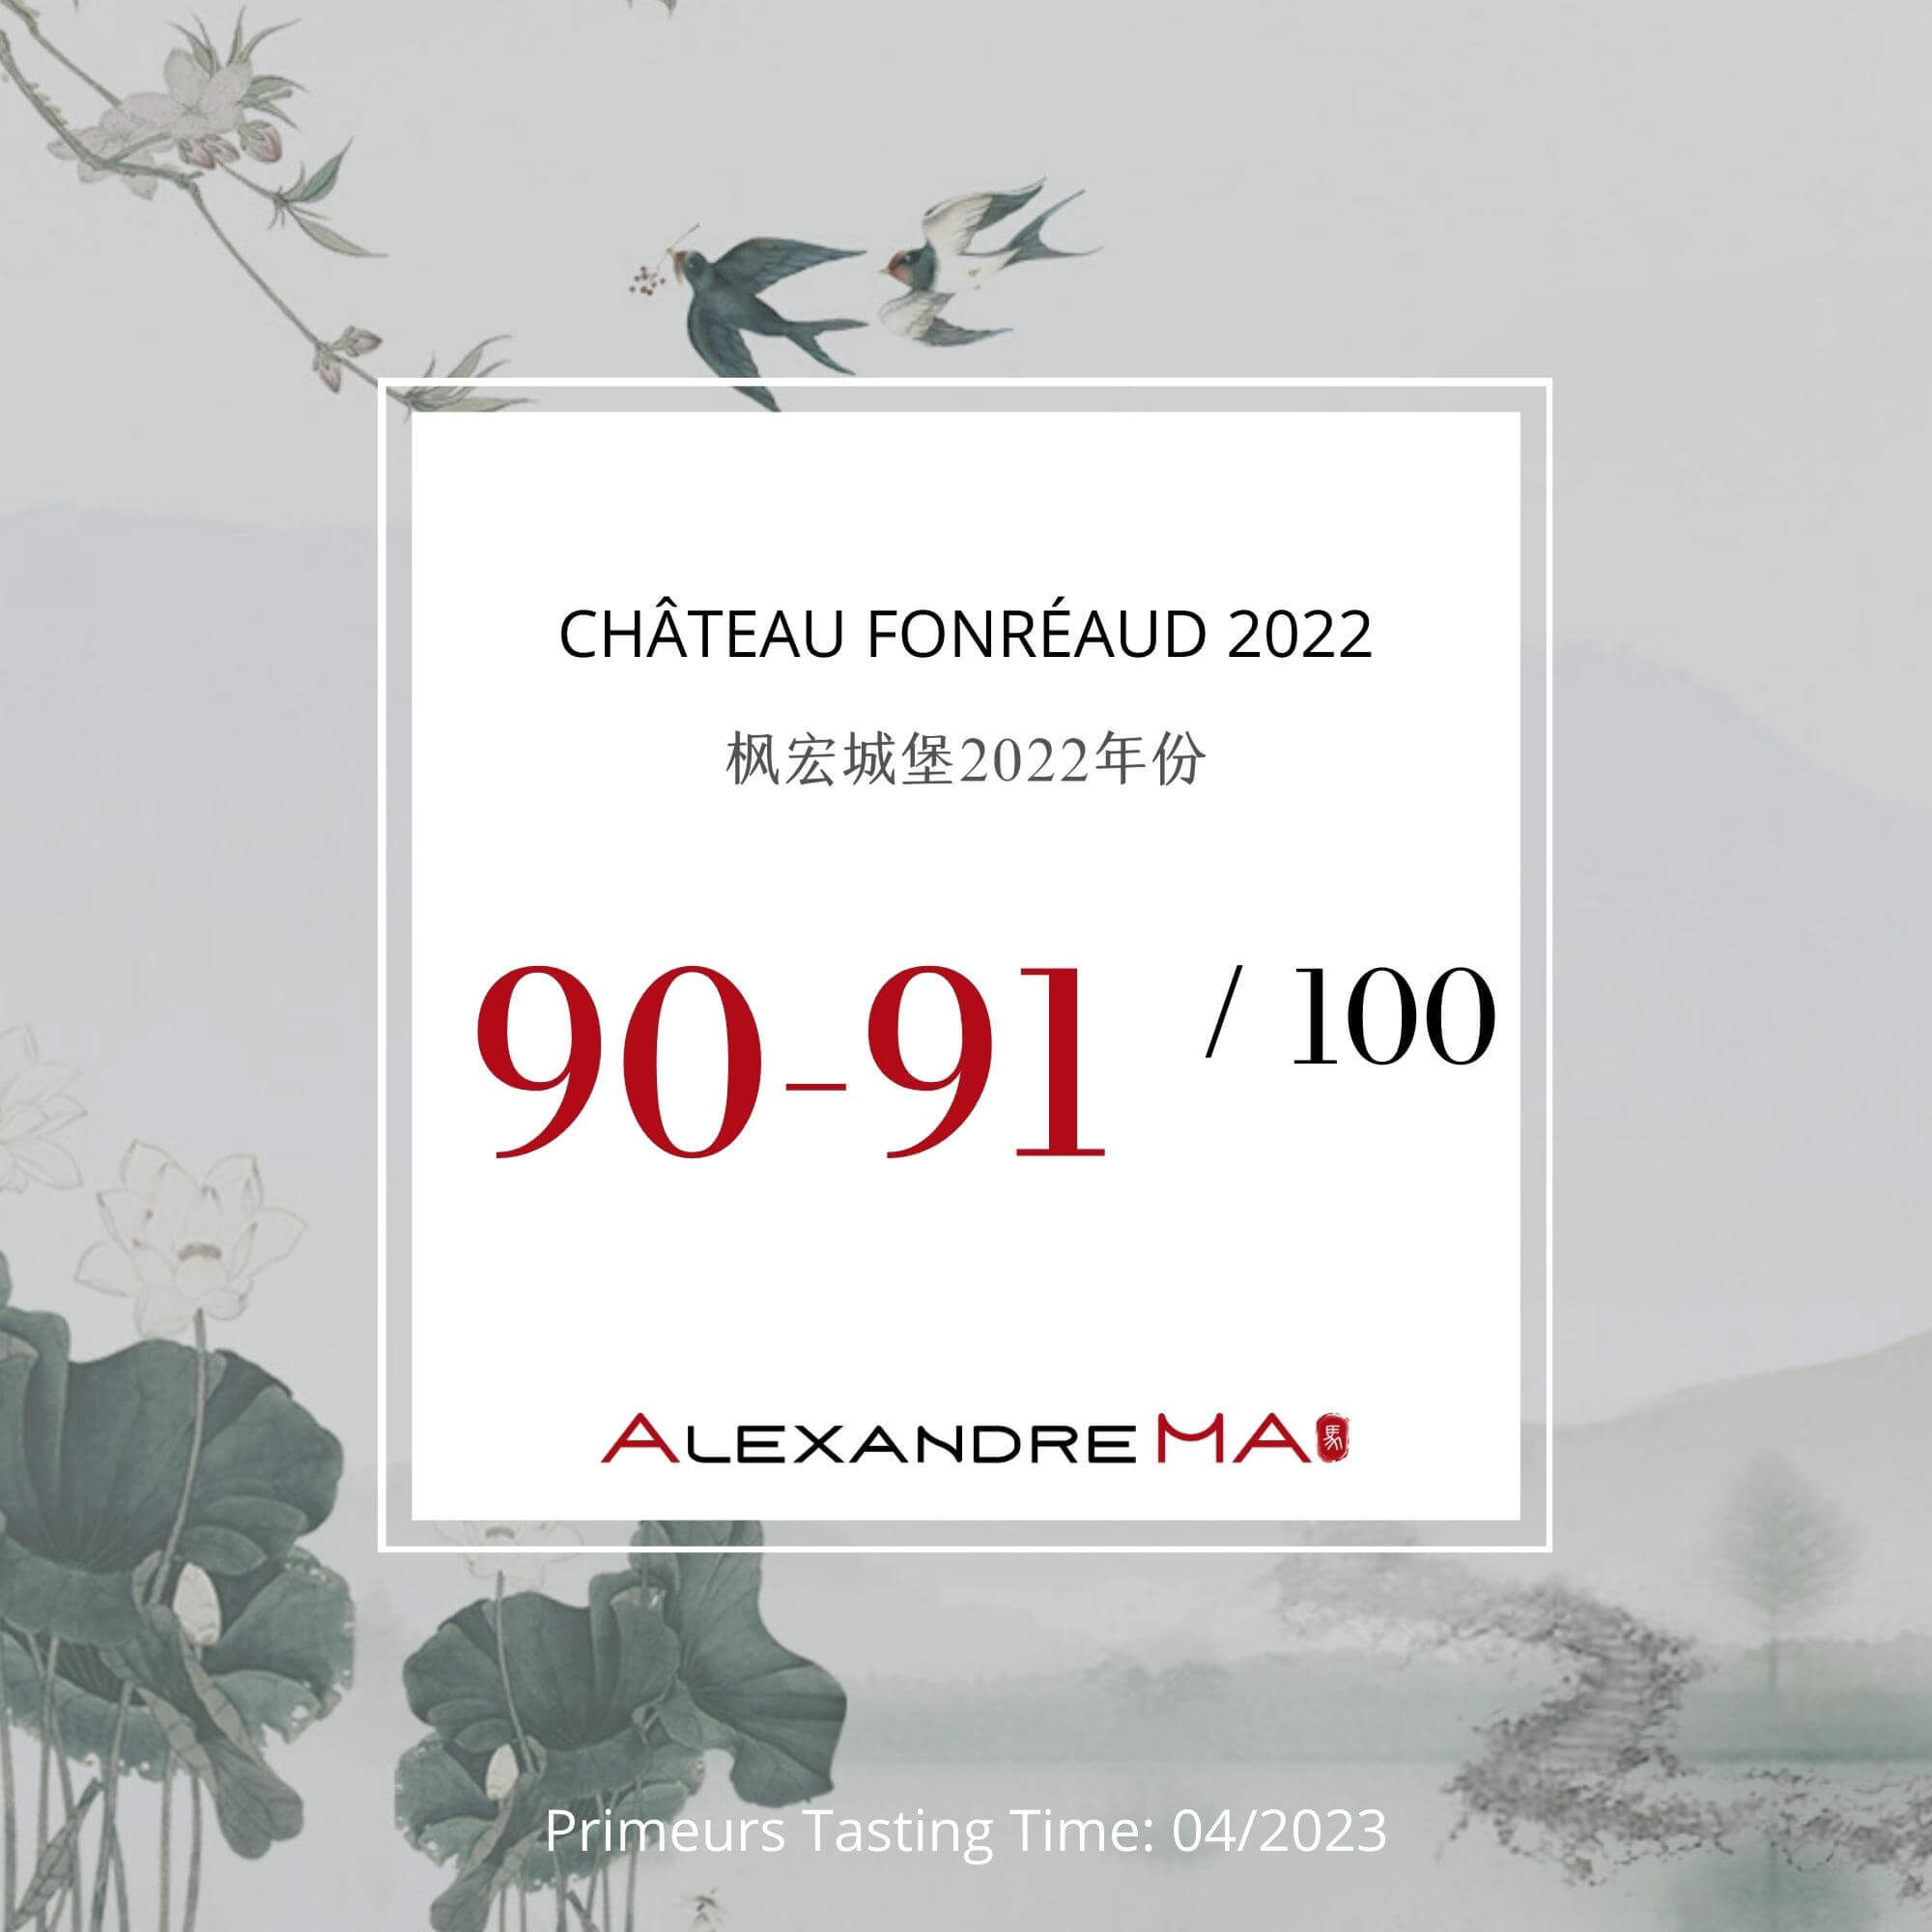 Château Fonréaud 2022 Primeurs - Alexandre MA